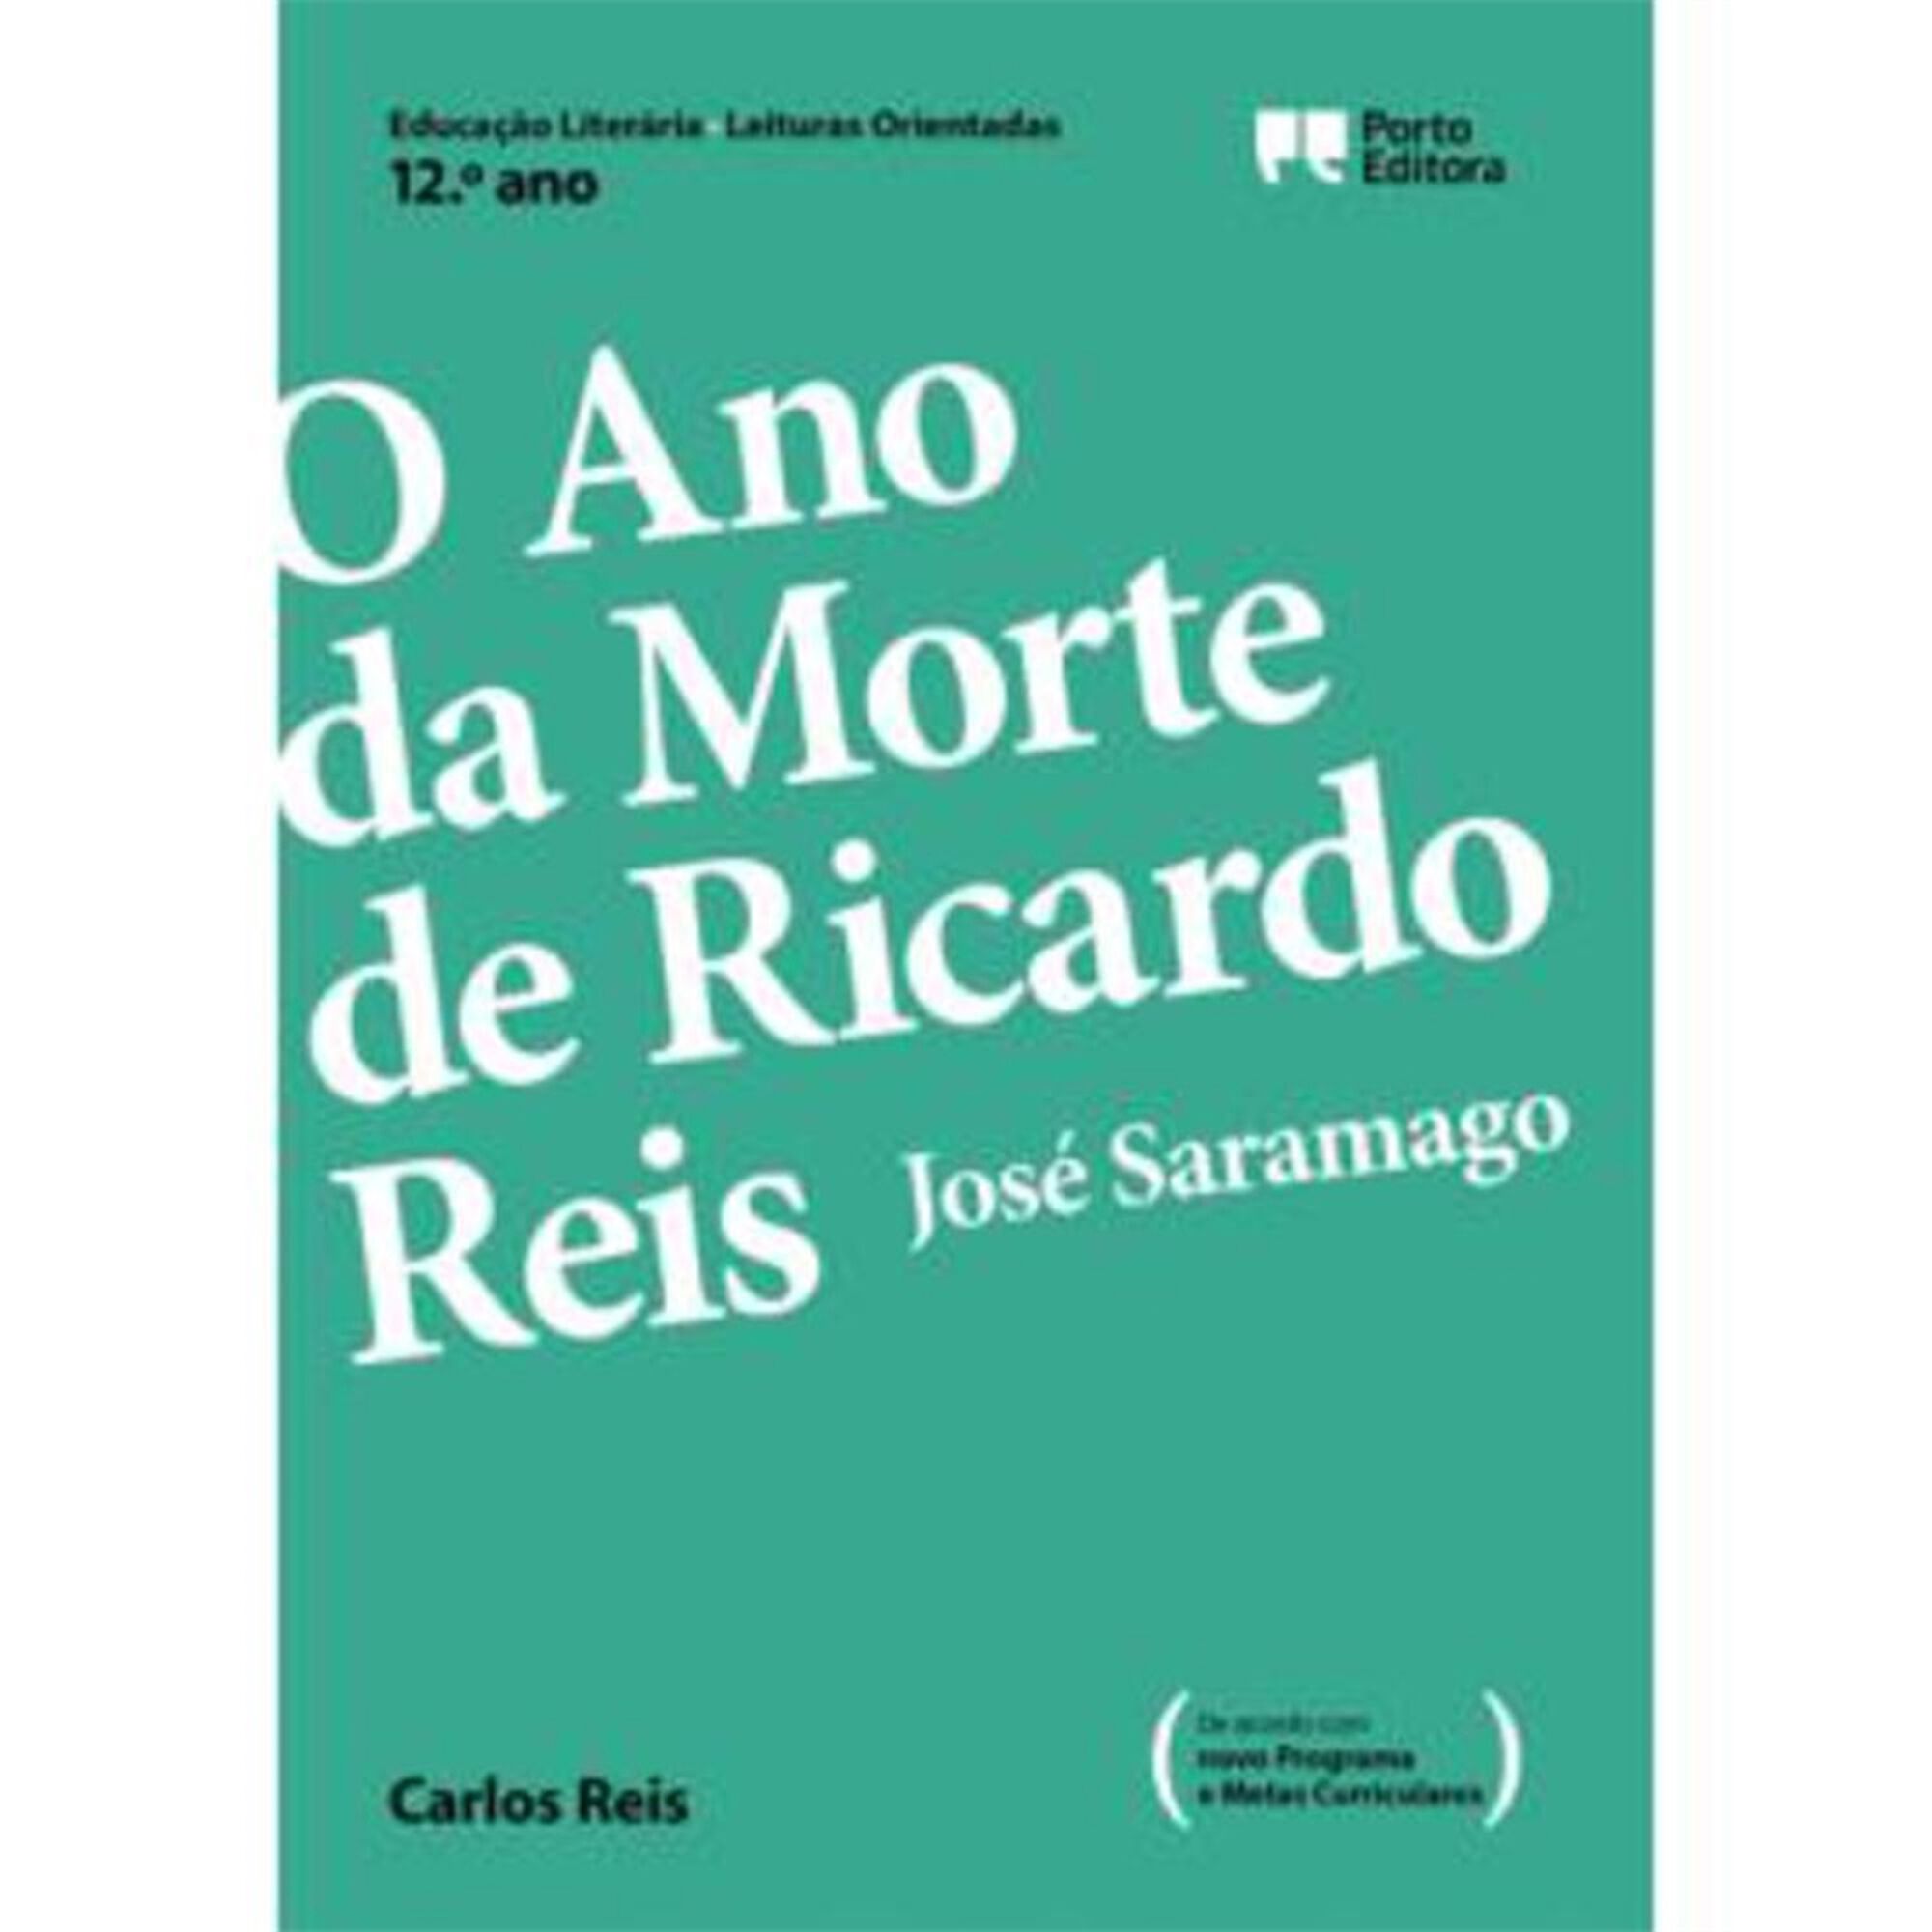 Leituras Orientadas - O Ano da Morte de Ricardo Reis, José Saramago